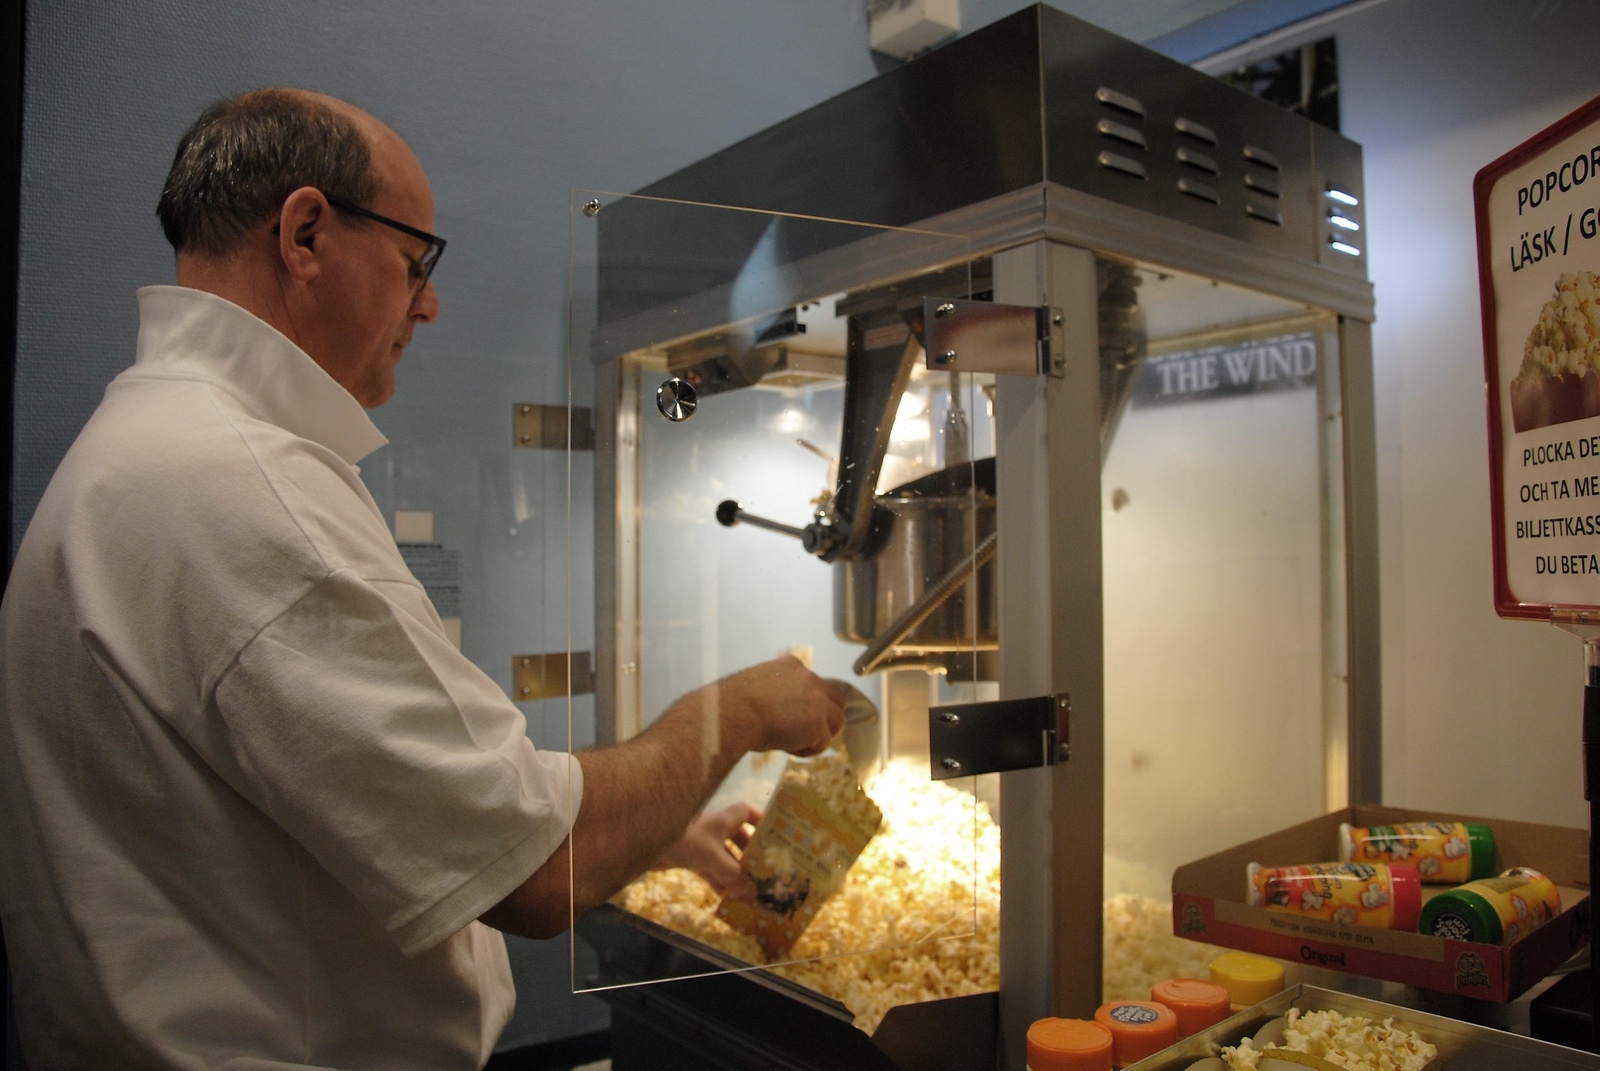 Lennart Hansson poppar popcorn för fulla muggar. Han tillhör gänget som jobbar på Borgen.